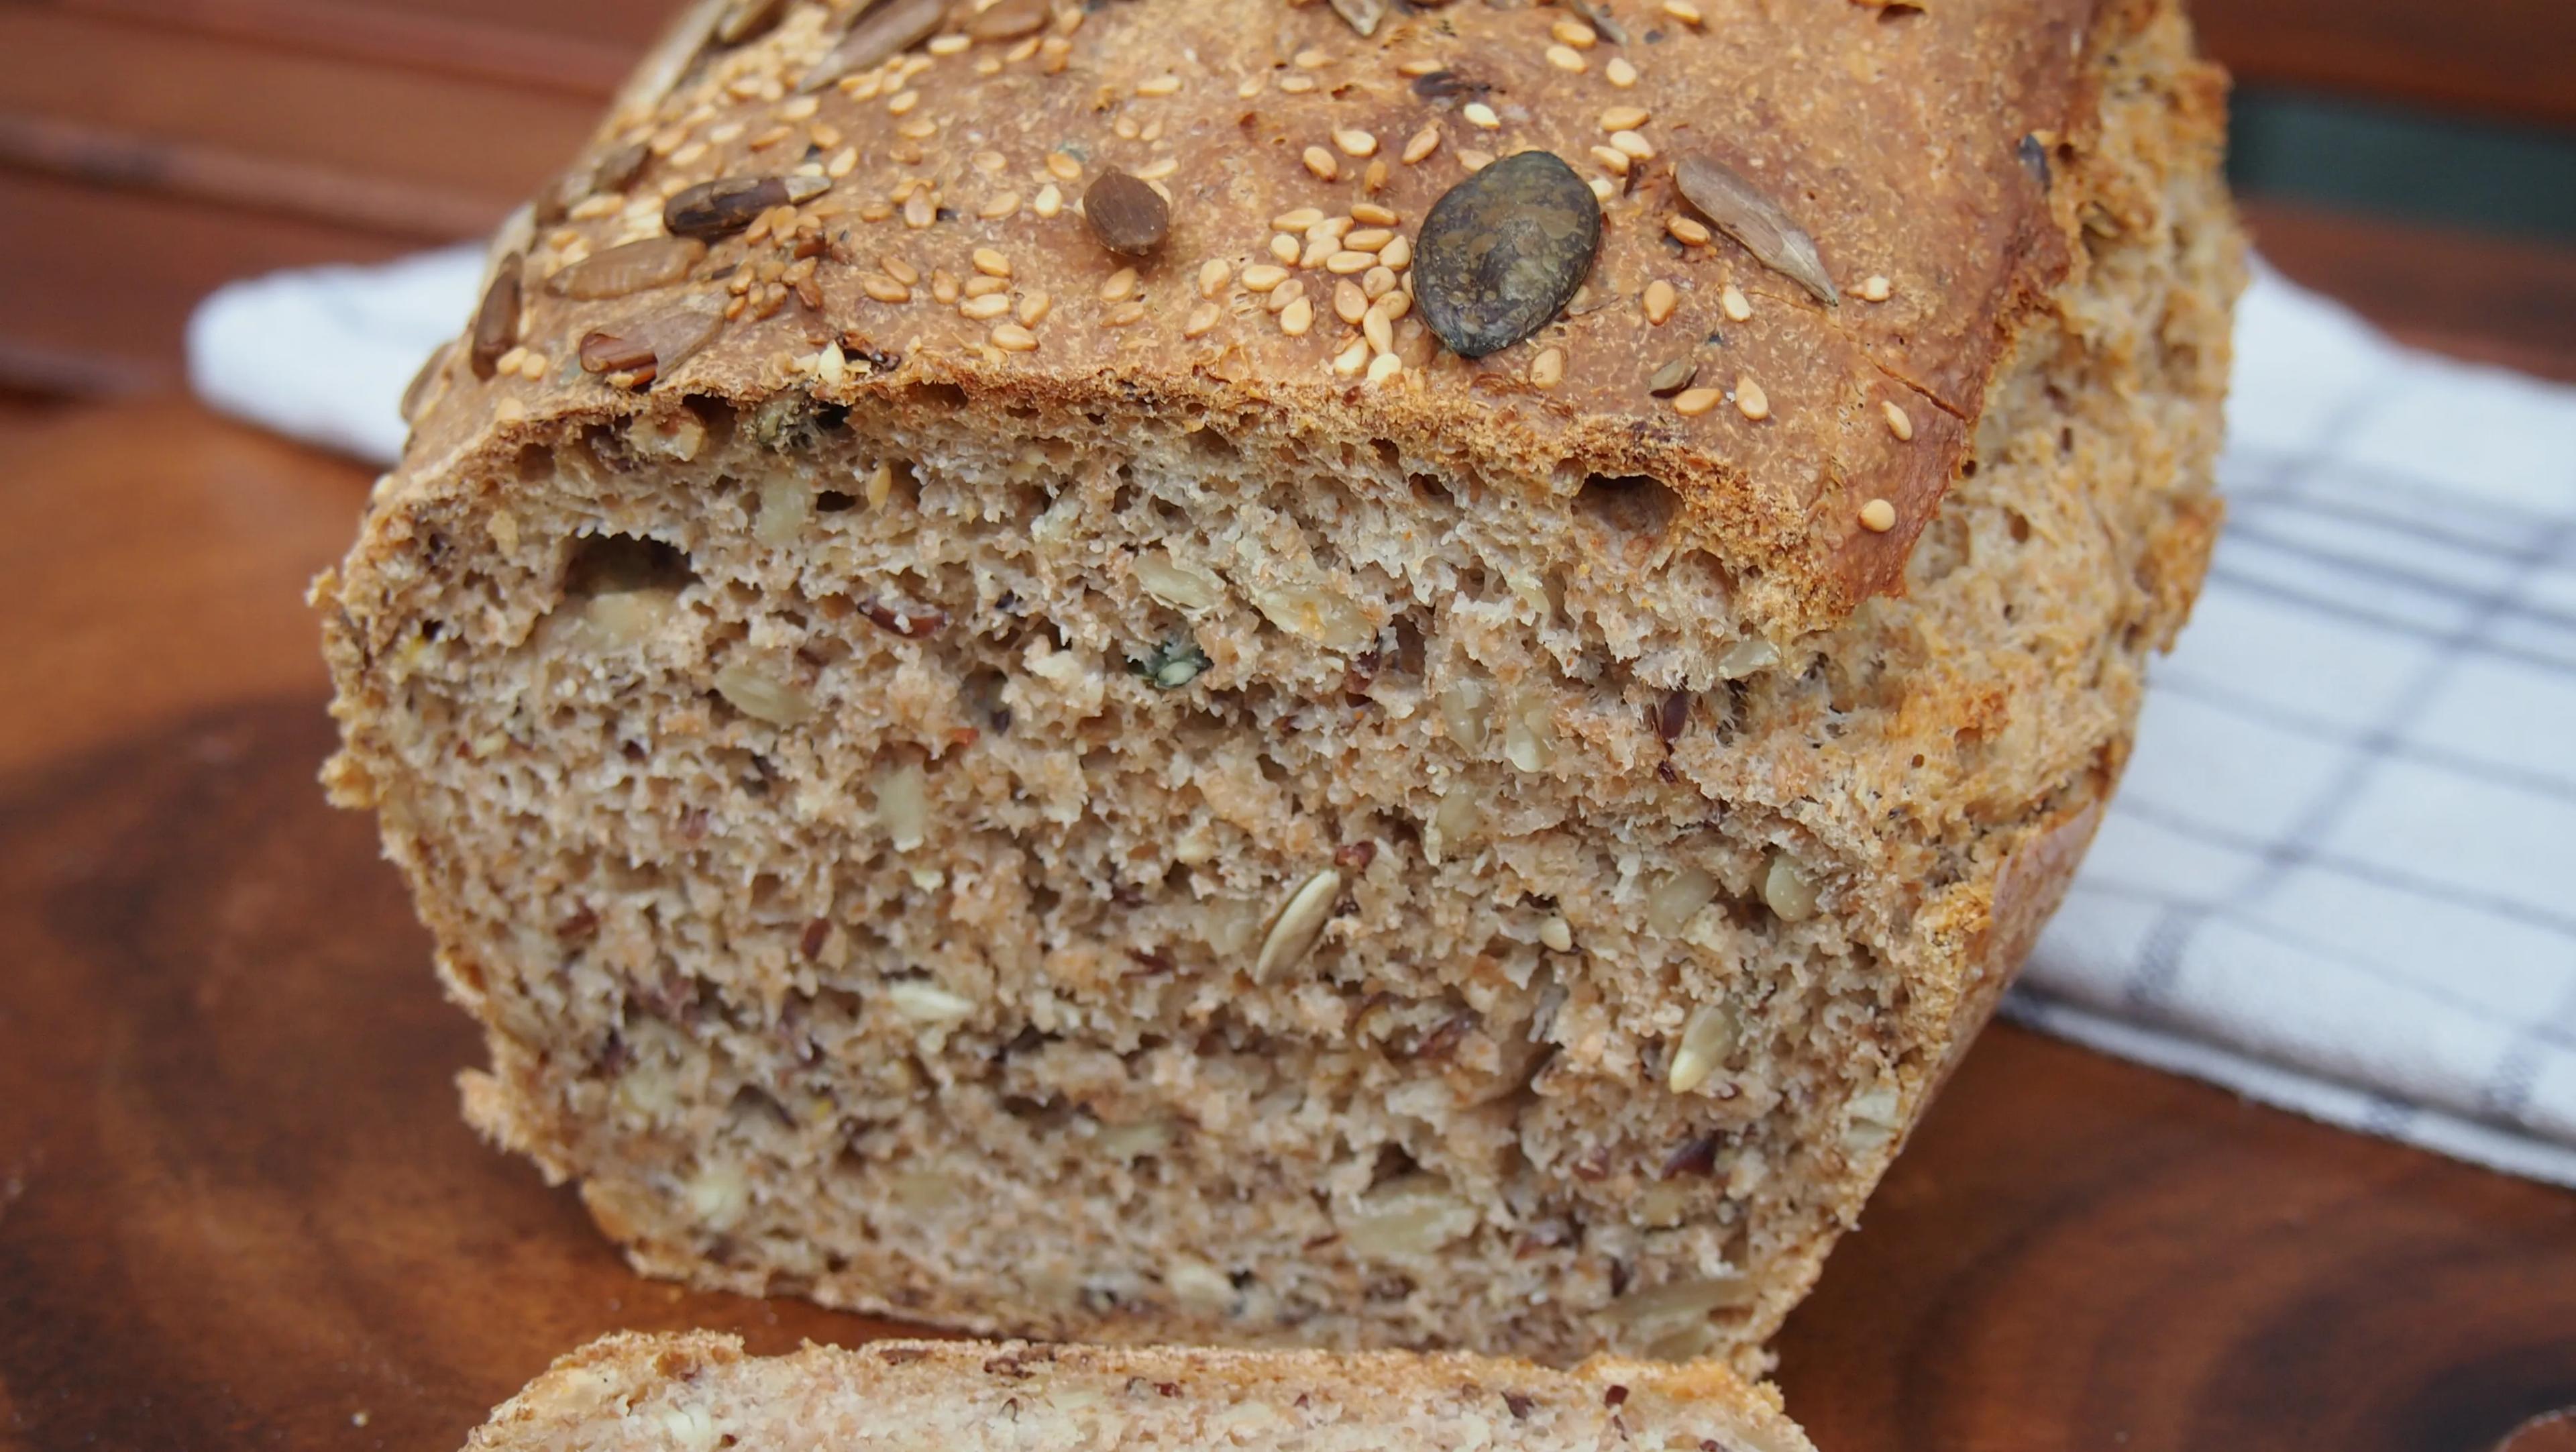 Vollkorn Dinkel Brot mit Sonnenblumenkernen (vegan) - Bake it naked